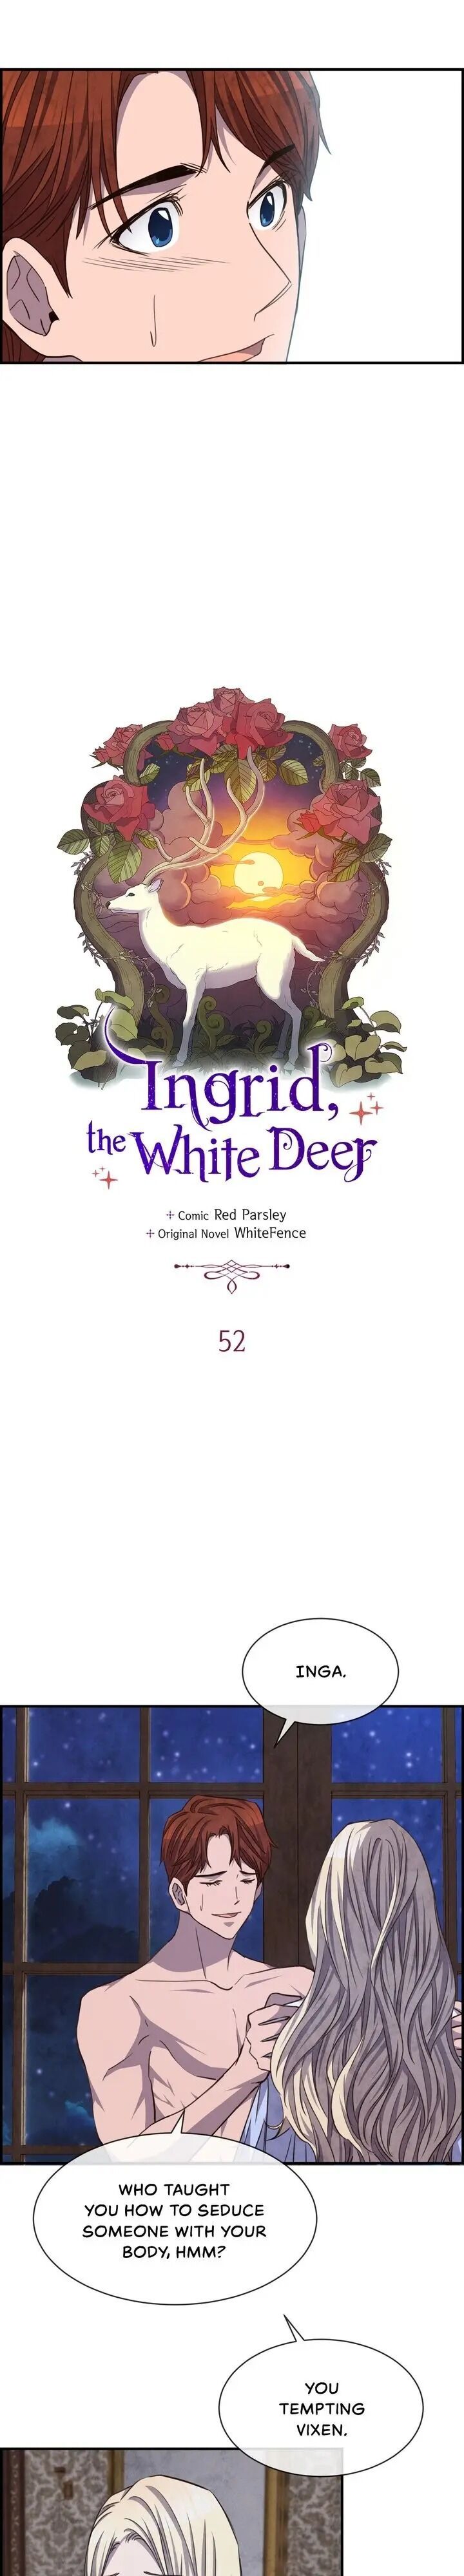 White Deer Ingrid! Chapter 052 page 4